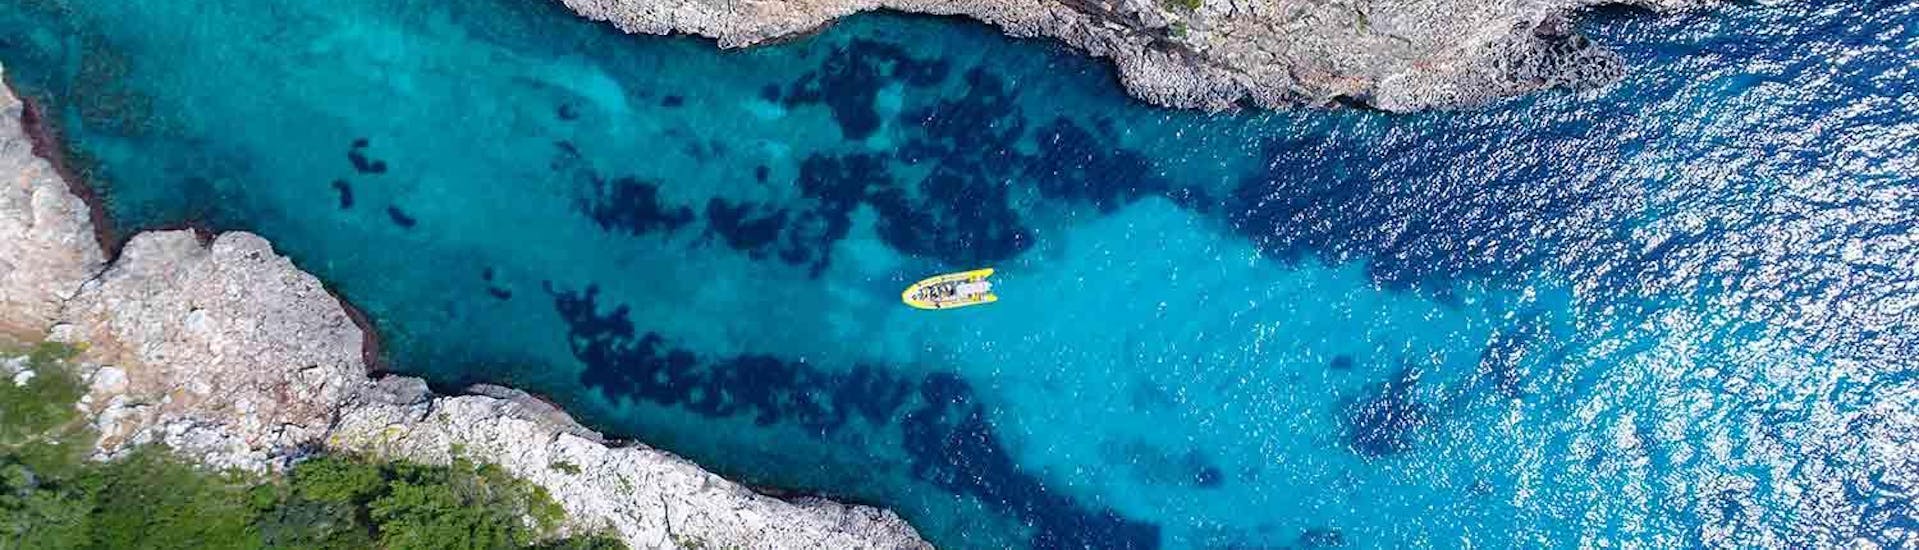 Photo du bateau utilisé pour la Balade en bateau vers les criques vierges de Porto Cristo avec Skualo Diving Watersports Mallorca.